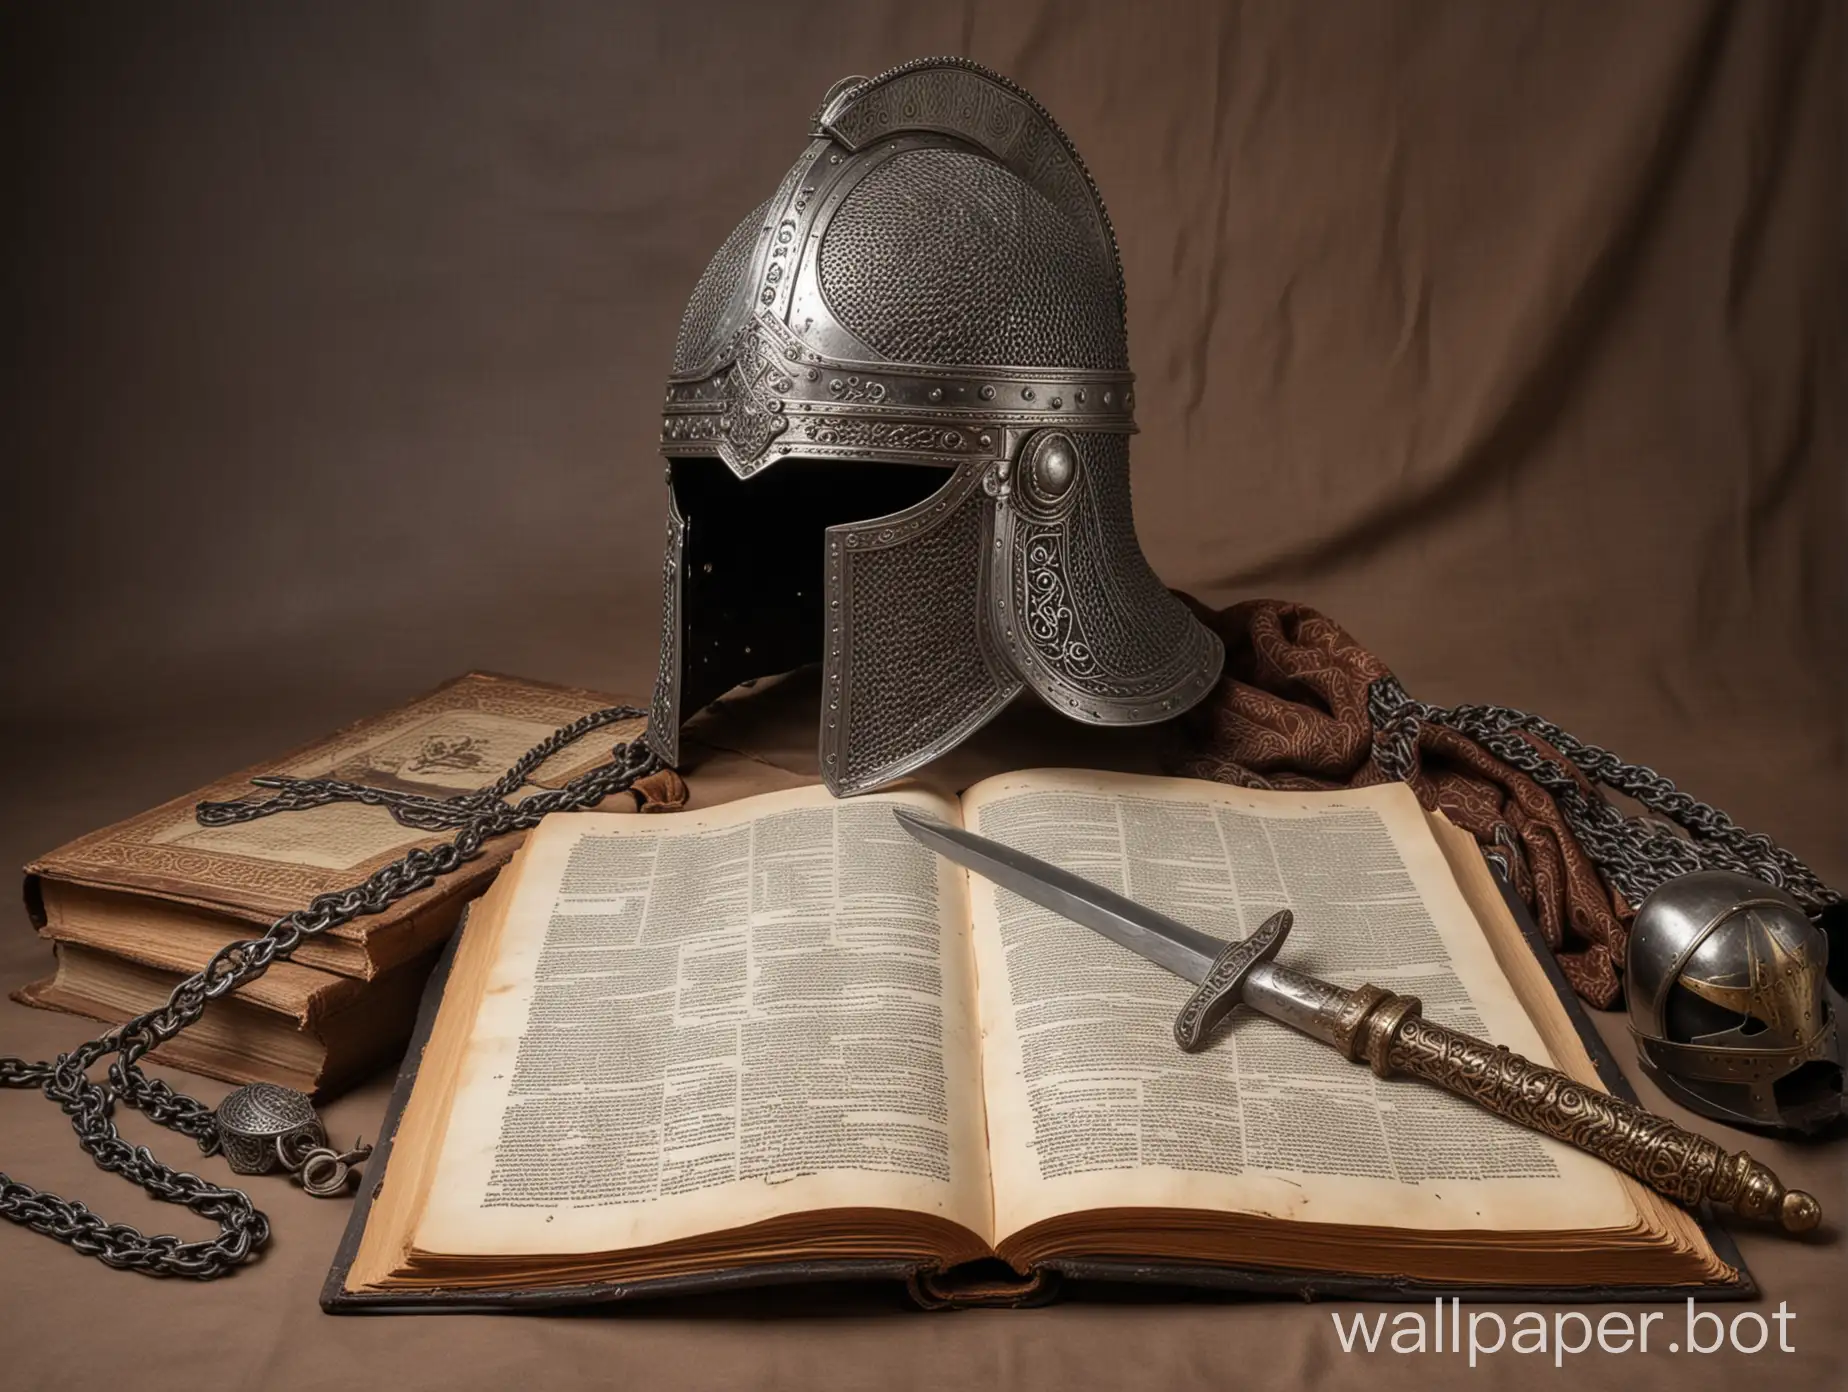 Большой древнерусский шлем, меч, кольчуга, щит, старинная раскрытая книга